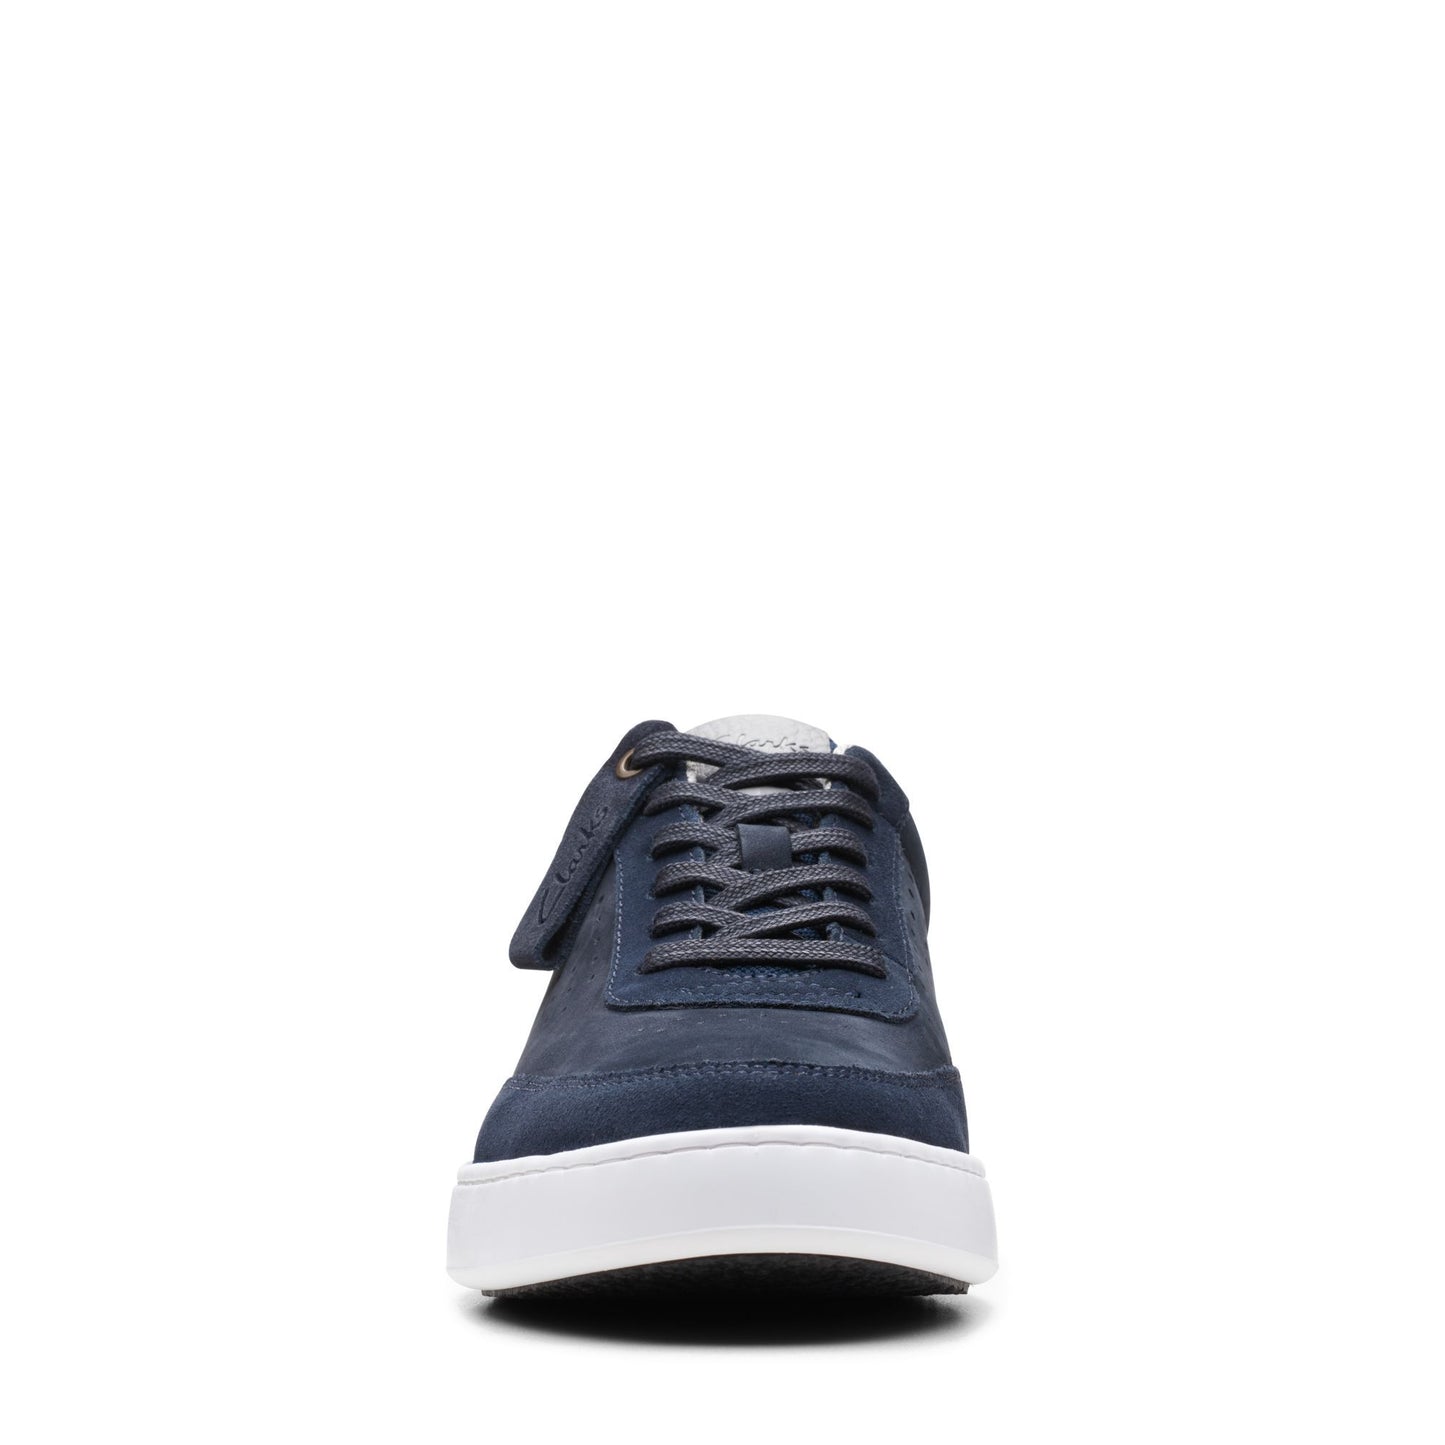 Sneakers De La Marca Clarks Para Hombre Modelo Courtlite Tor NavyEn Color Azul